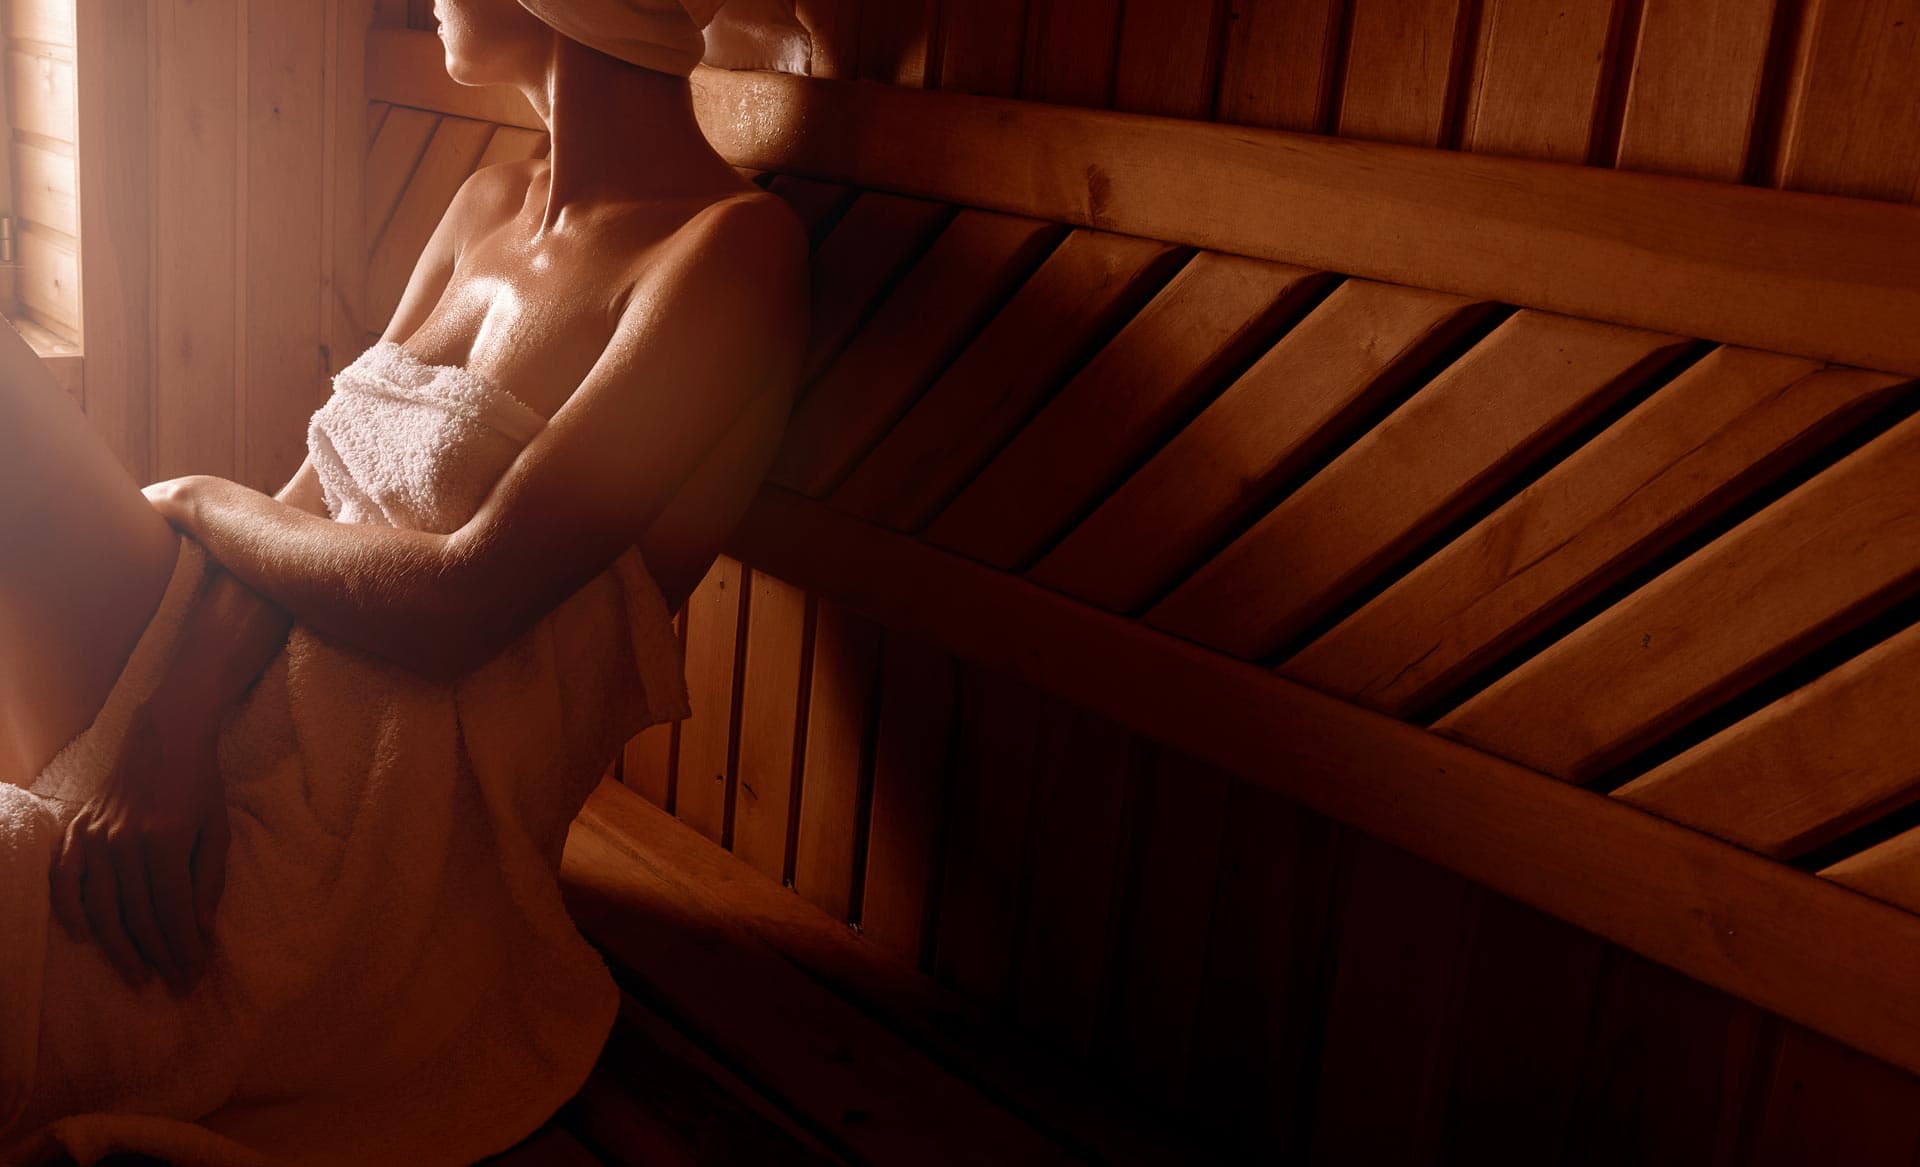  Disfruta de la sauna en tu hogar gracias a Aquadiseño